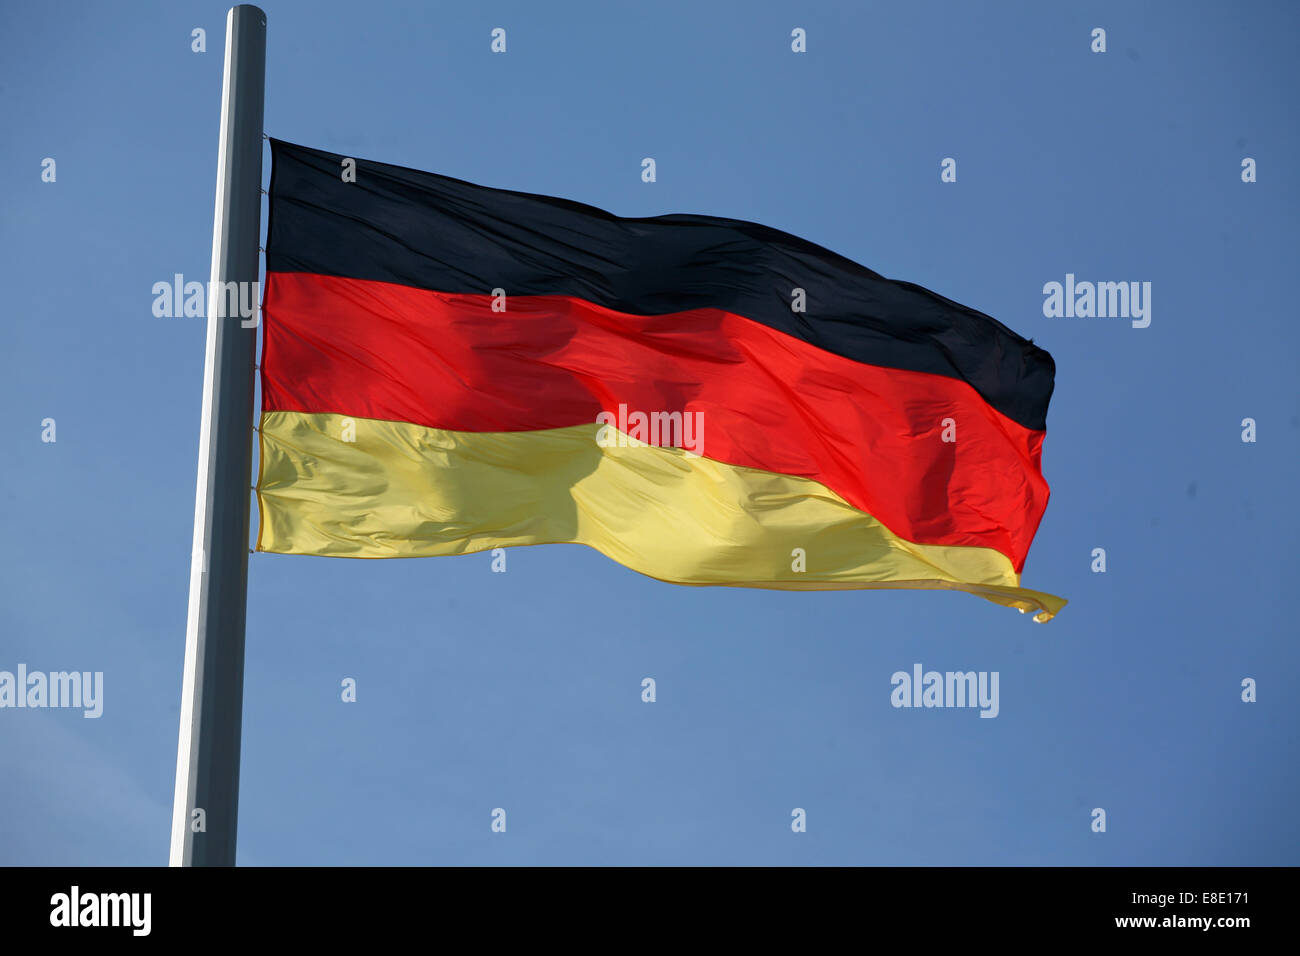 Flagge Deutschland Bundesflagge und Handelsflagge la bandera de Alemania Foto de stock